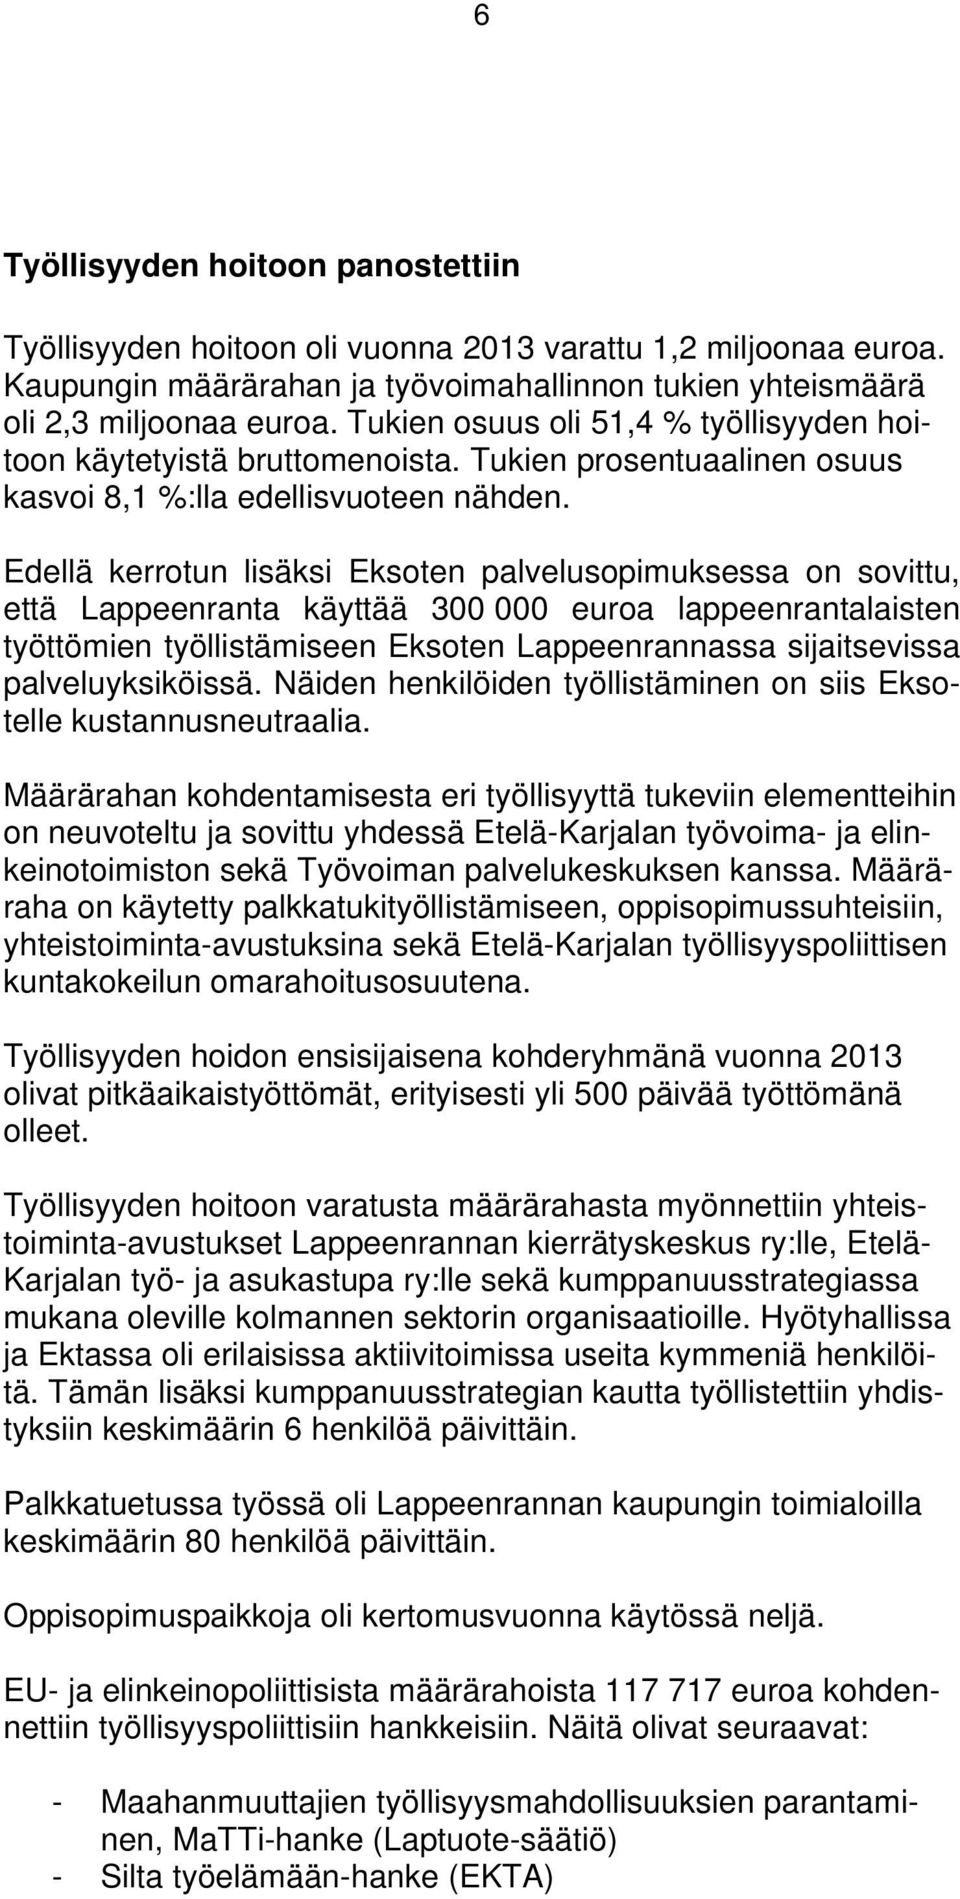 Edellä kerrotun lisäksi Eksoten palvelusopimuksessa on sovittu, että Lappeenranta käyttää 300 000 euroa lappeenrantalaisten työttömien työllistämiseen Eksoten Lappeenrannassa sijaitsevissa